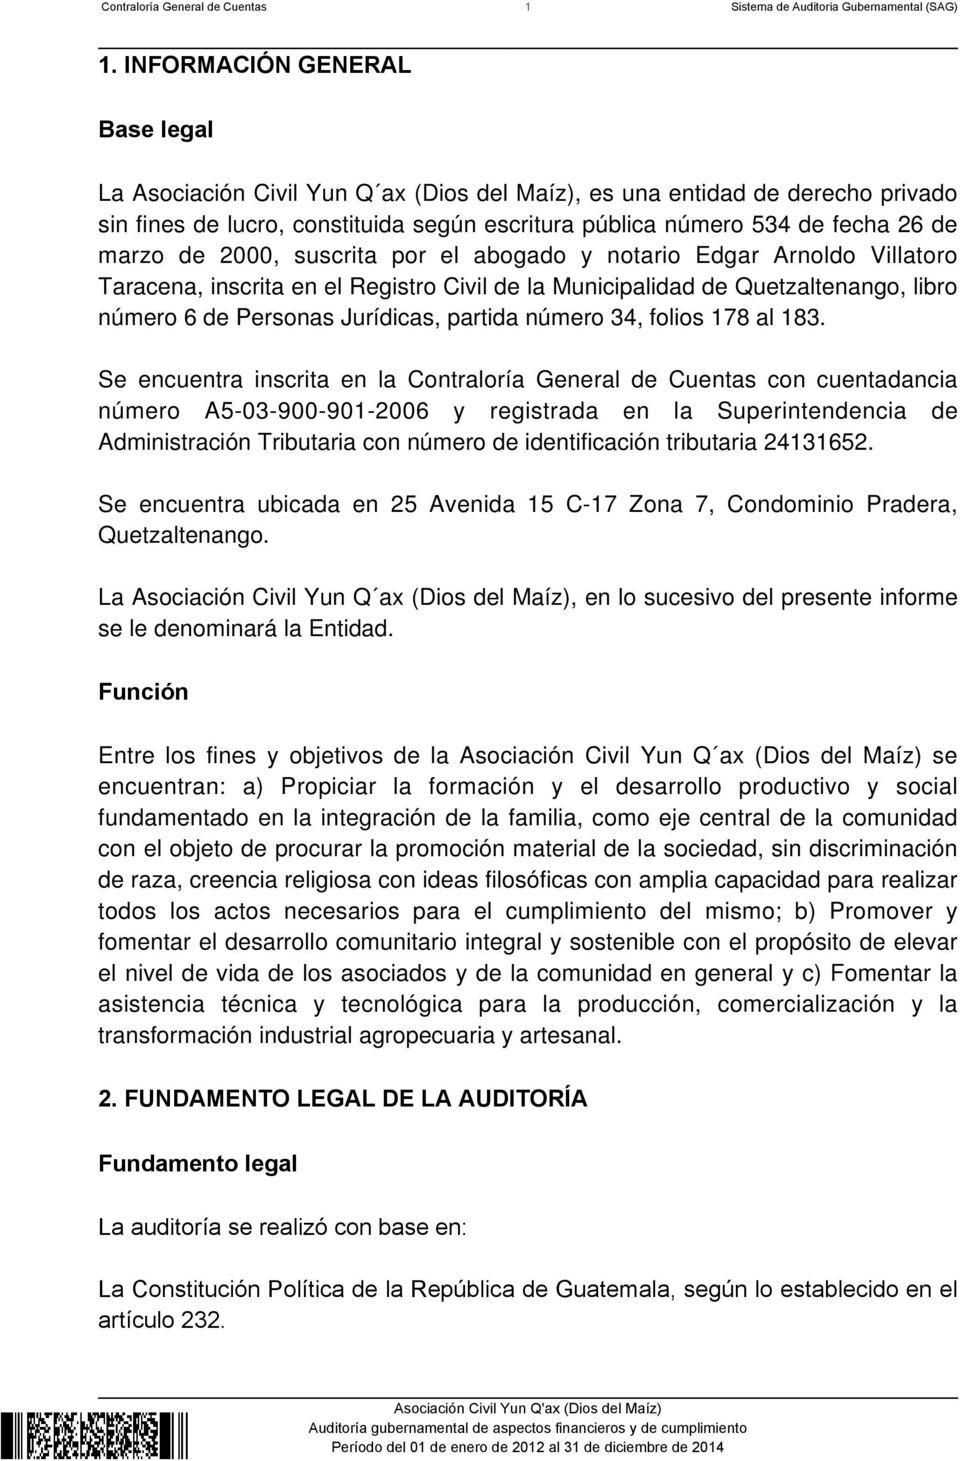 de 2000, suscrita por el abogado y notario Edgar Arnoldo Villatoro Taracena, inscrita en el Registro Civil de la Municipalidad de Quetzaltenango, libro número 6 de Personas Jurídicas, partida número